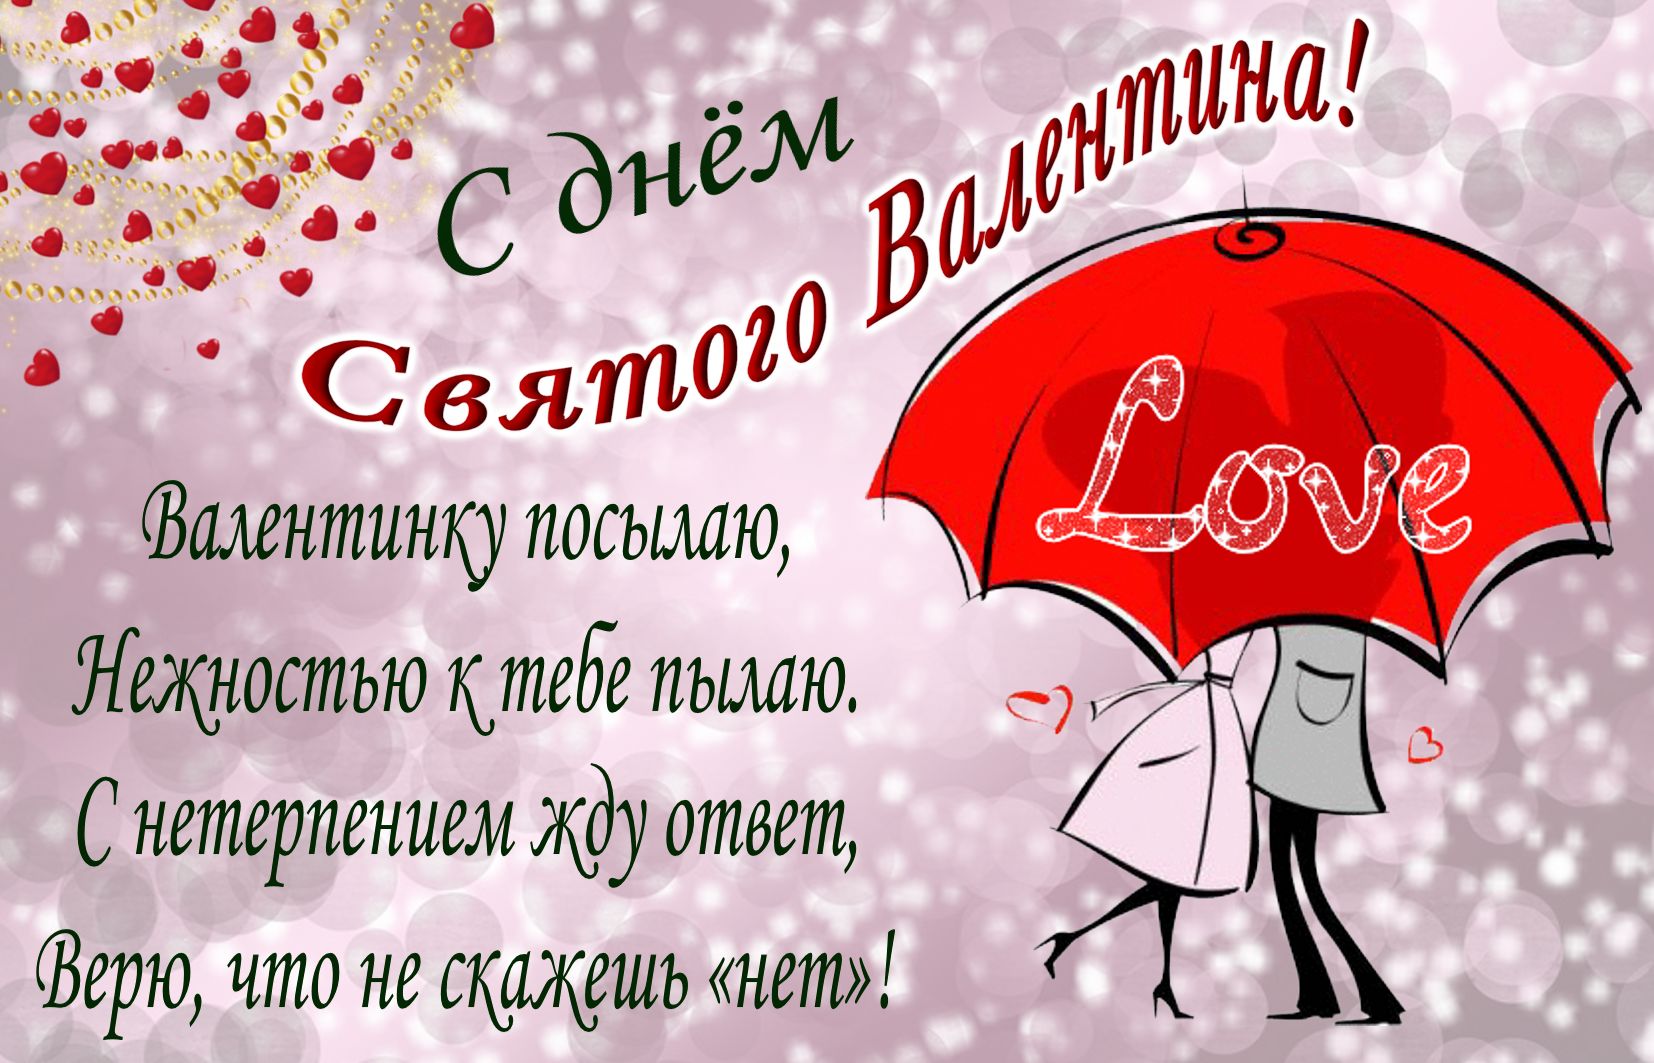 Двое под зонтом с надписью Love